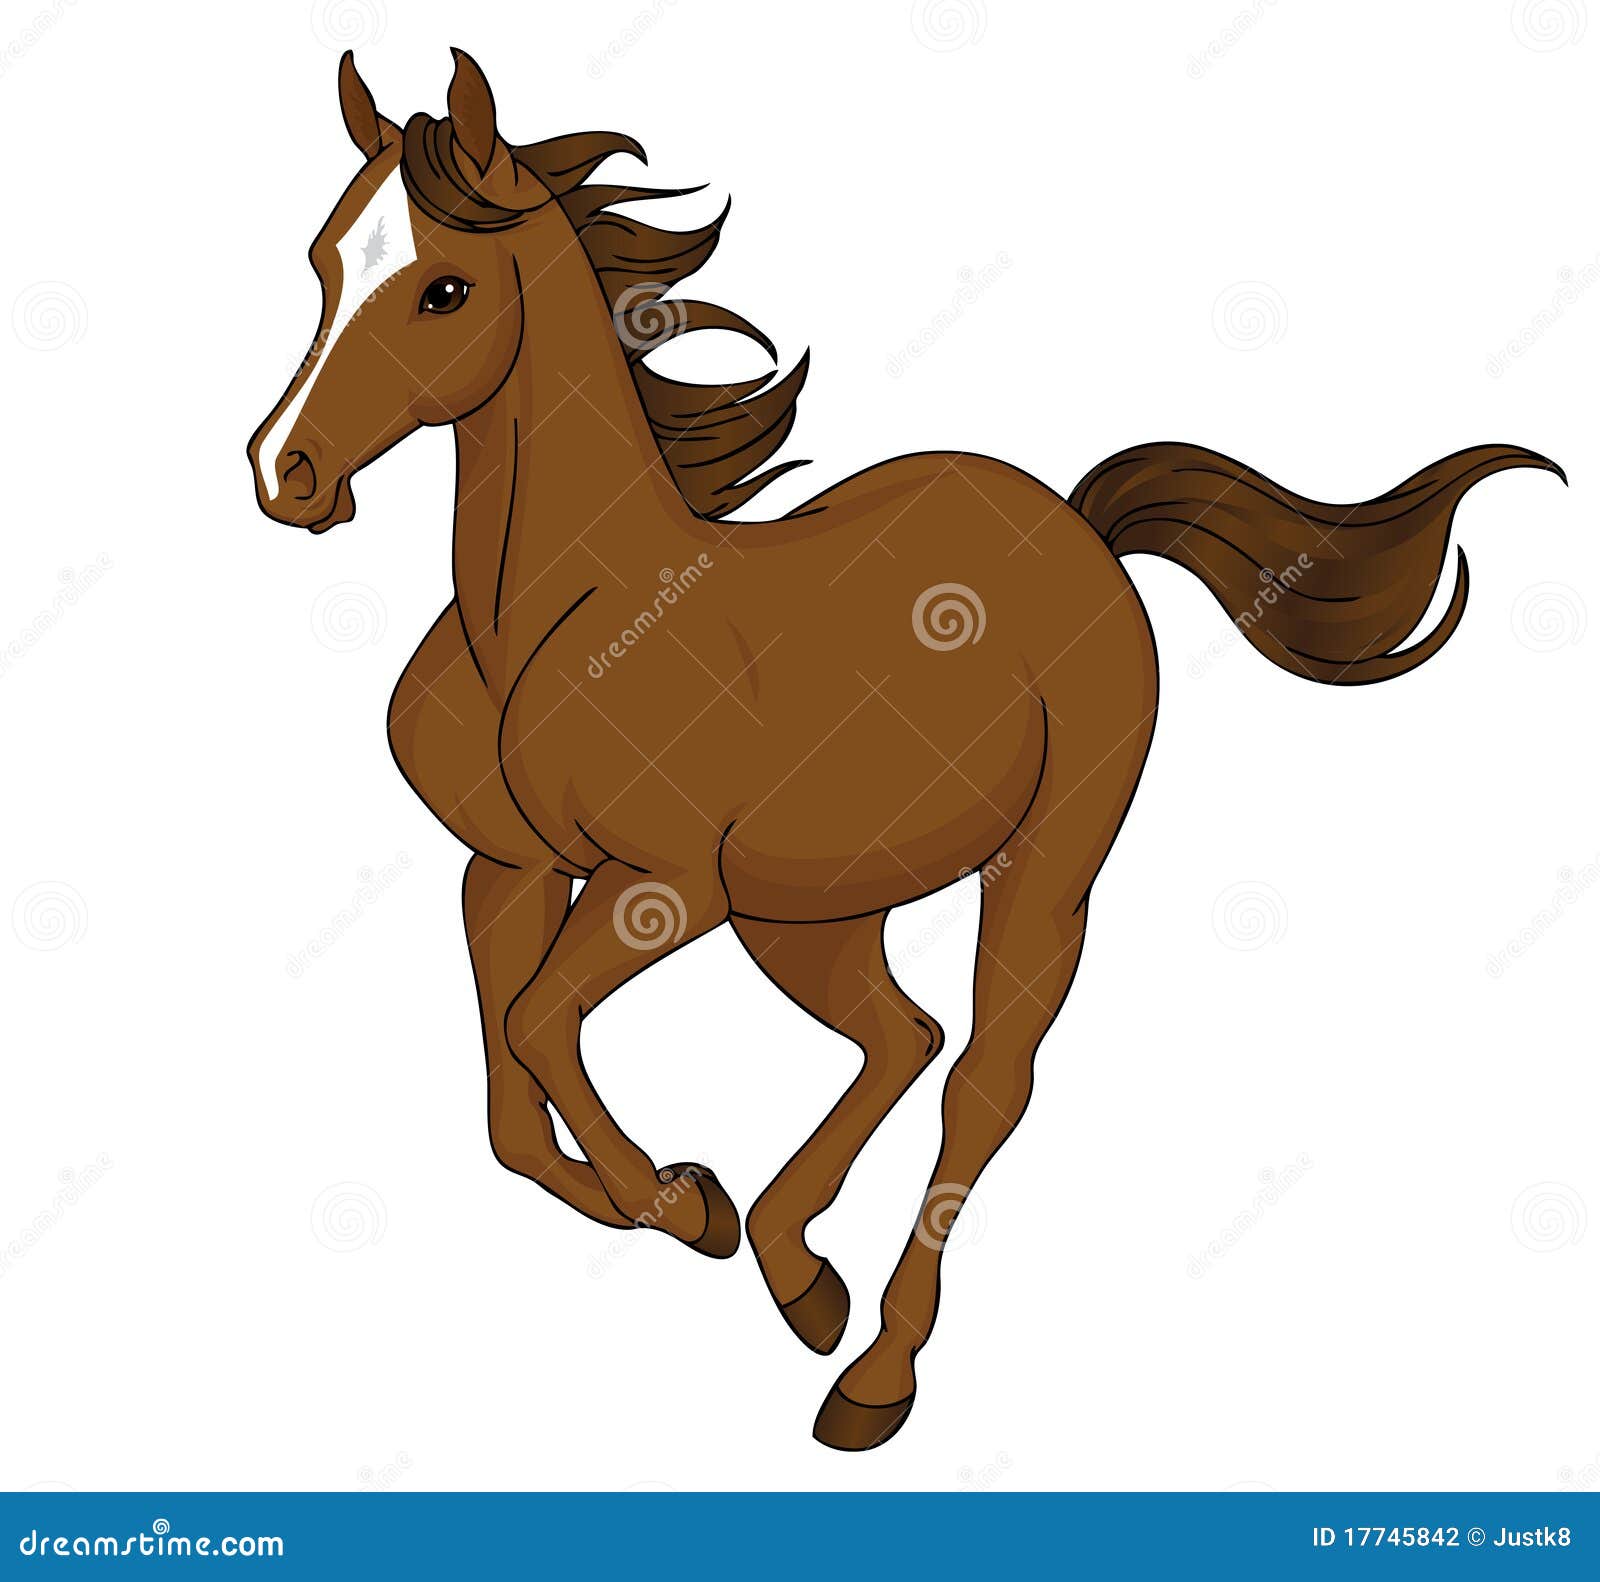 Cartoon horse running stock vector. Illustration of trotting - 17745842